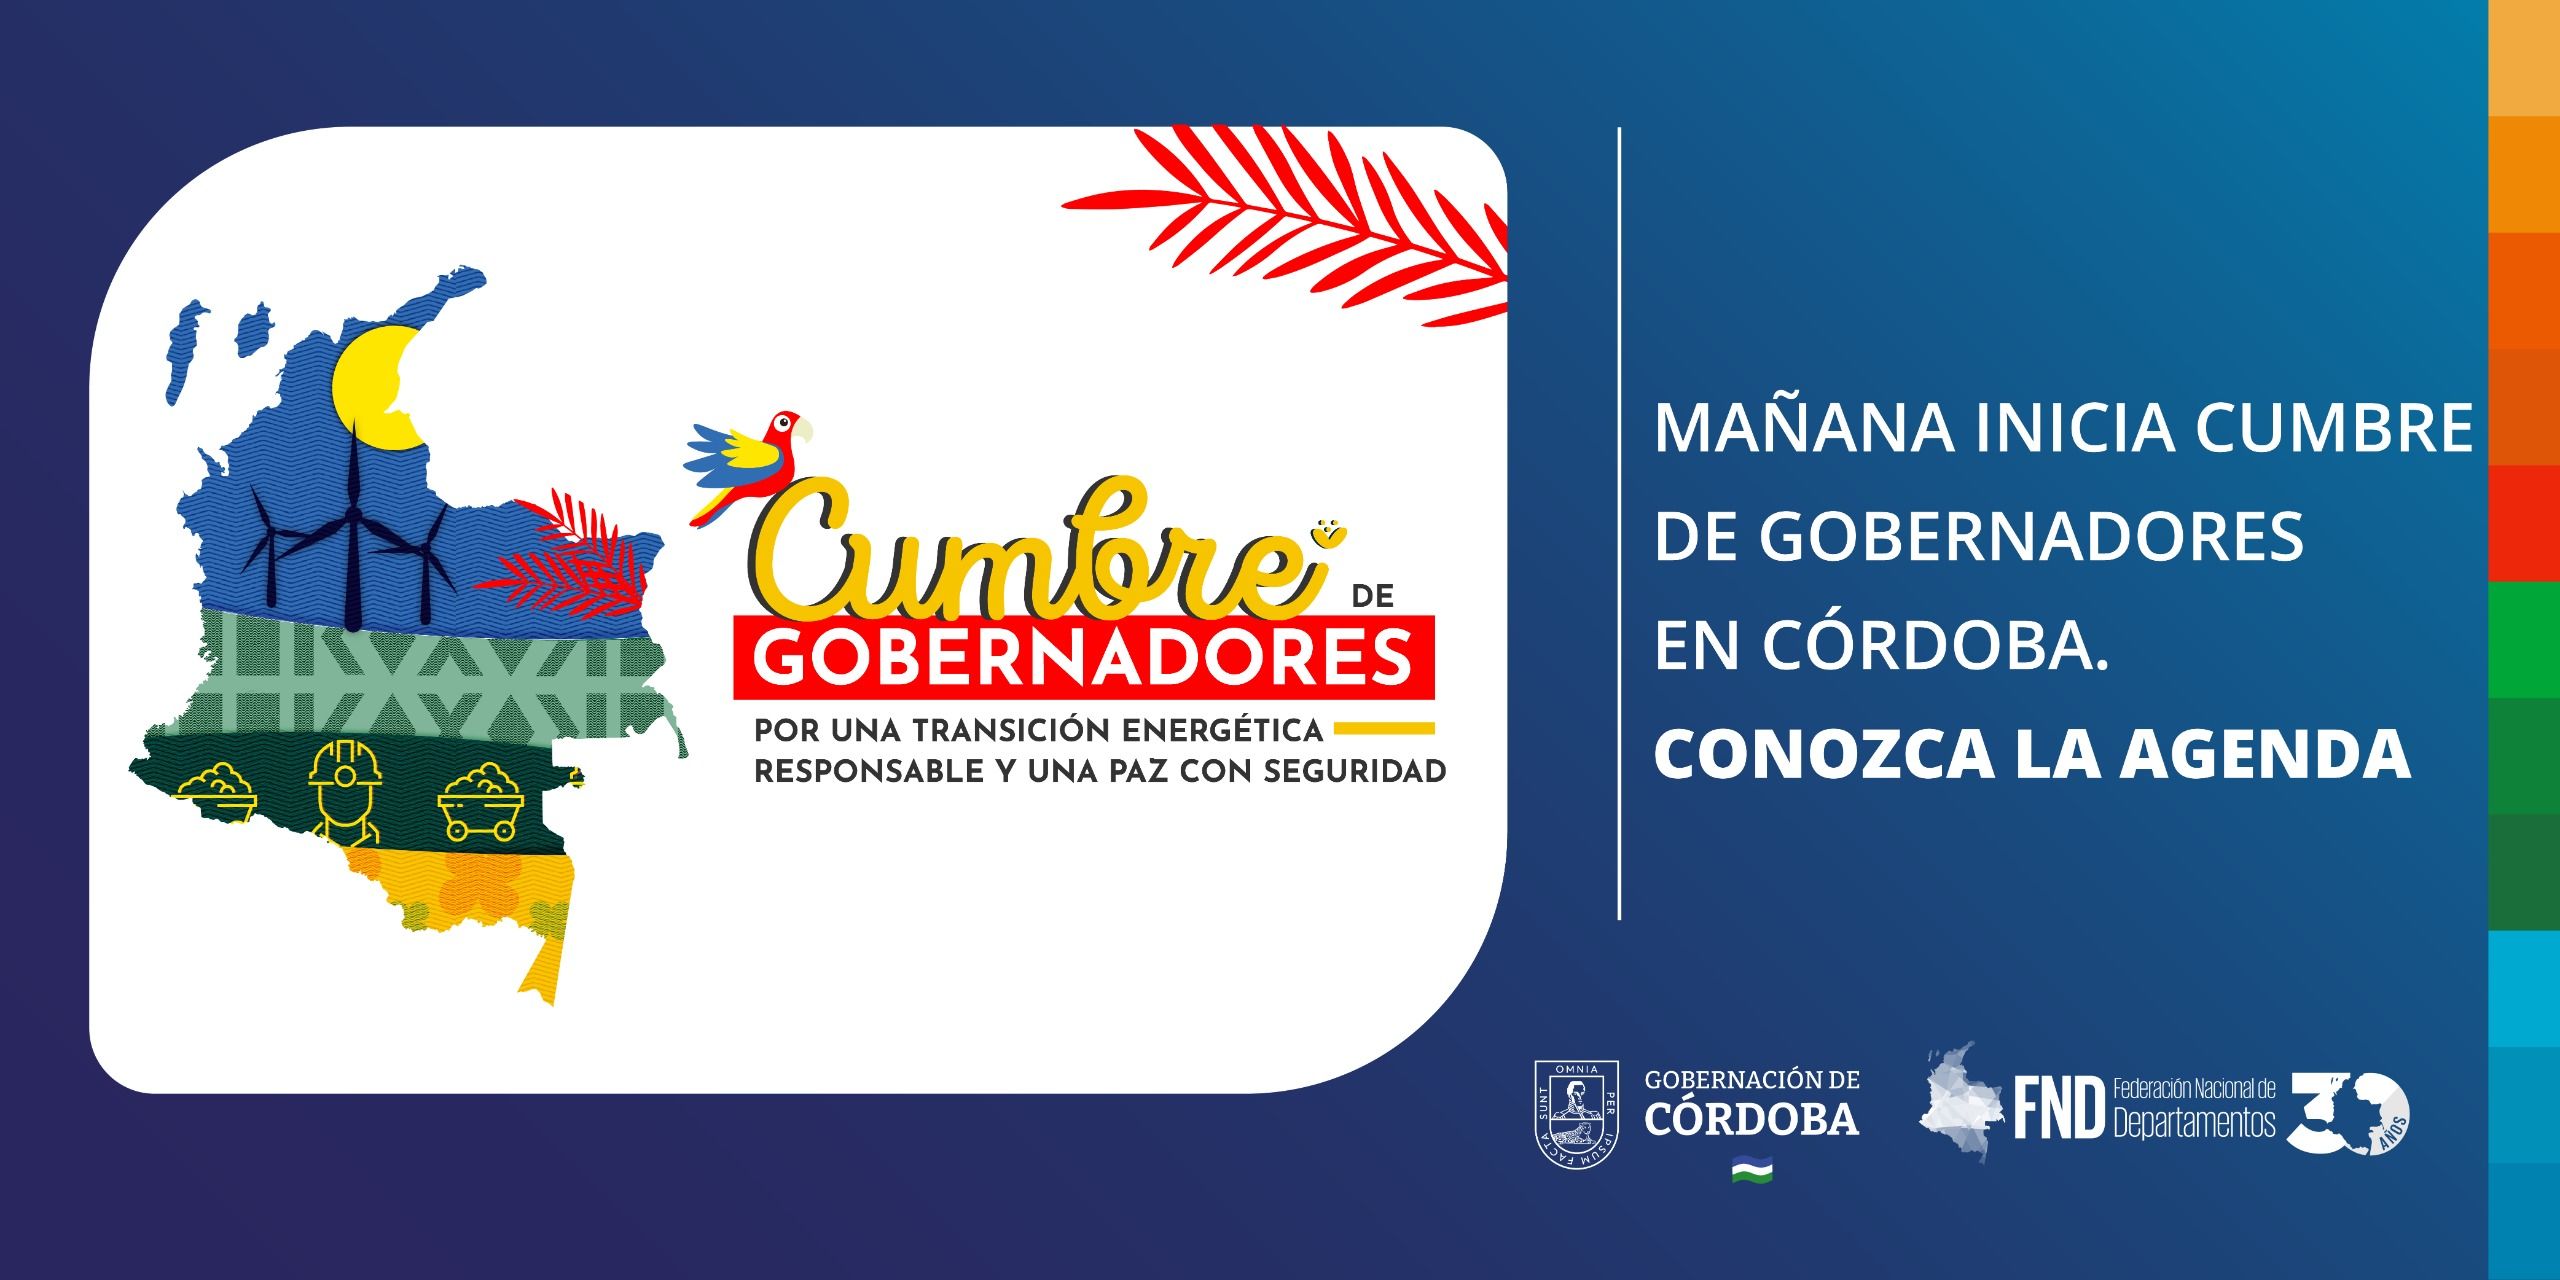 MAÑANA INICIA CUMBRE DE GOBERNADORES EN CÓRDOBA.  CONOZCA LA AGENDA. image